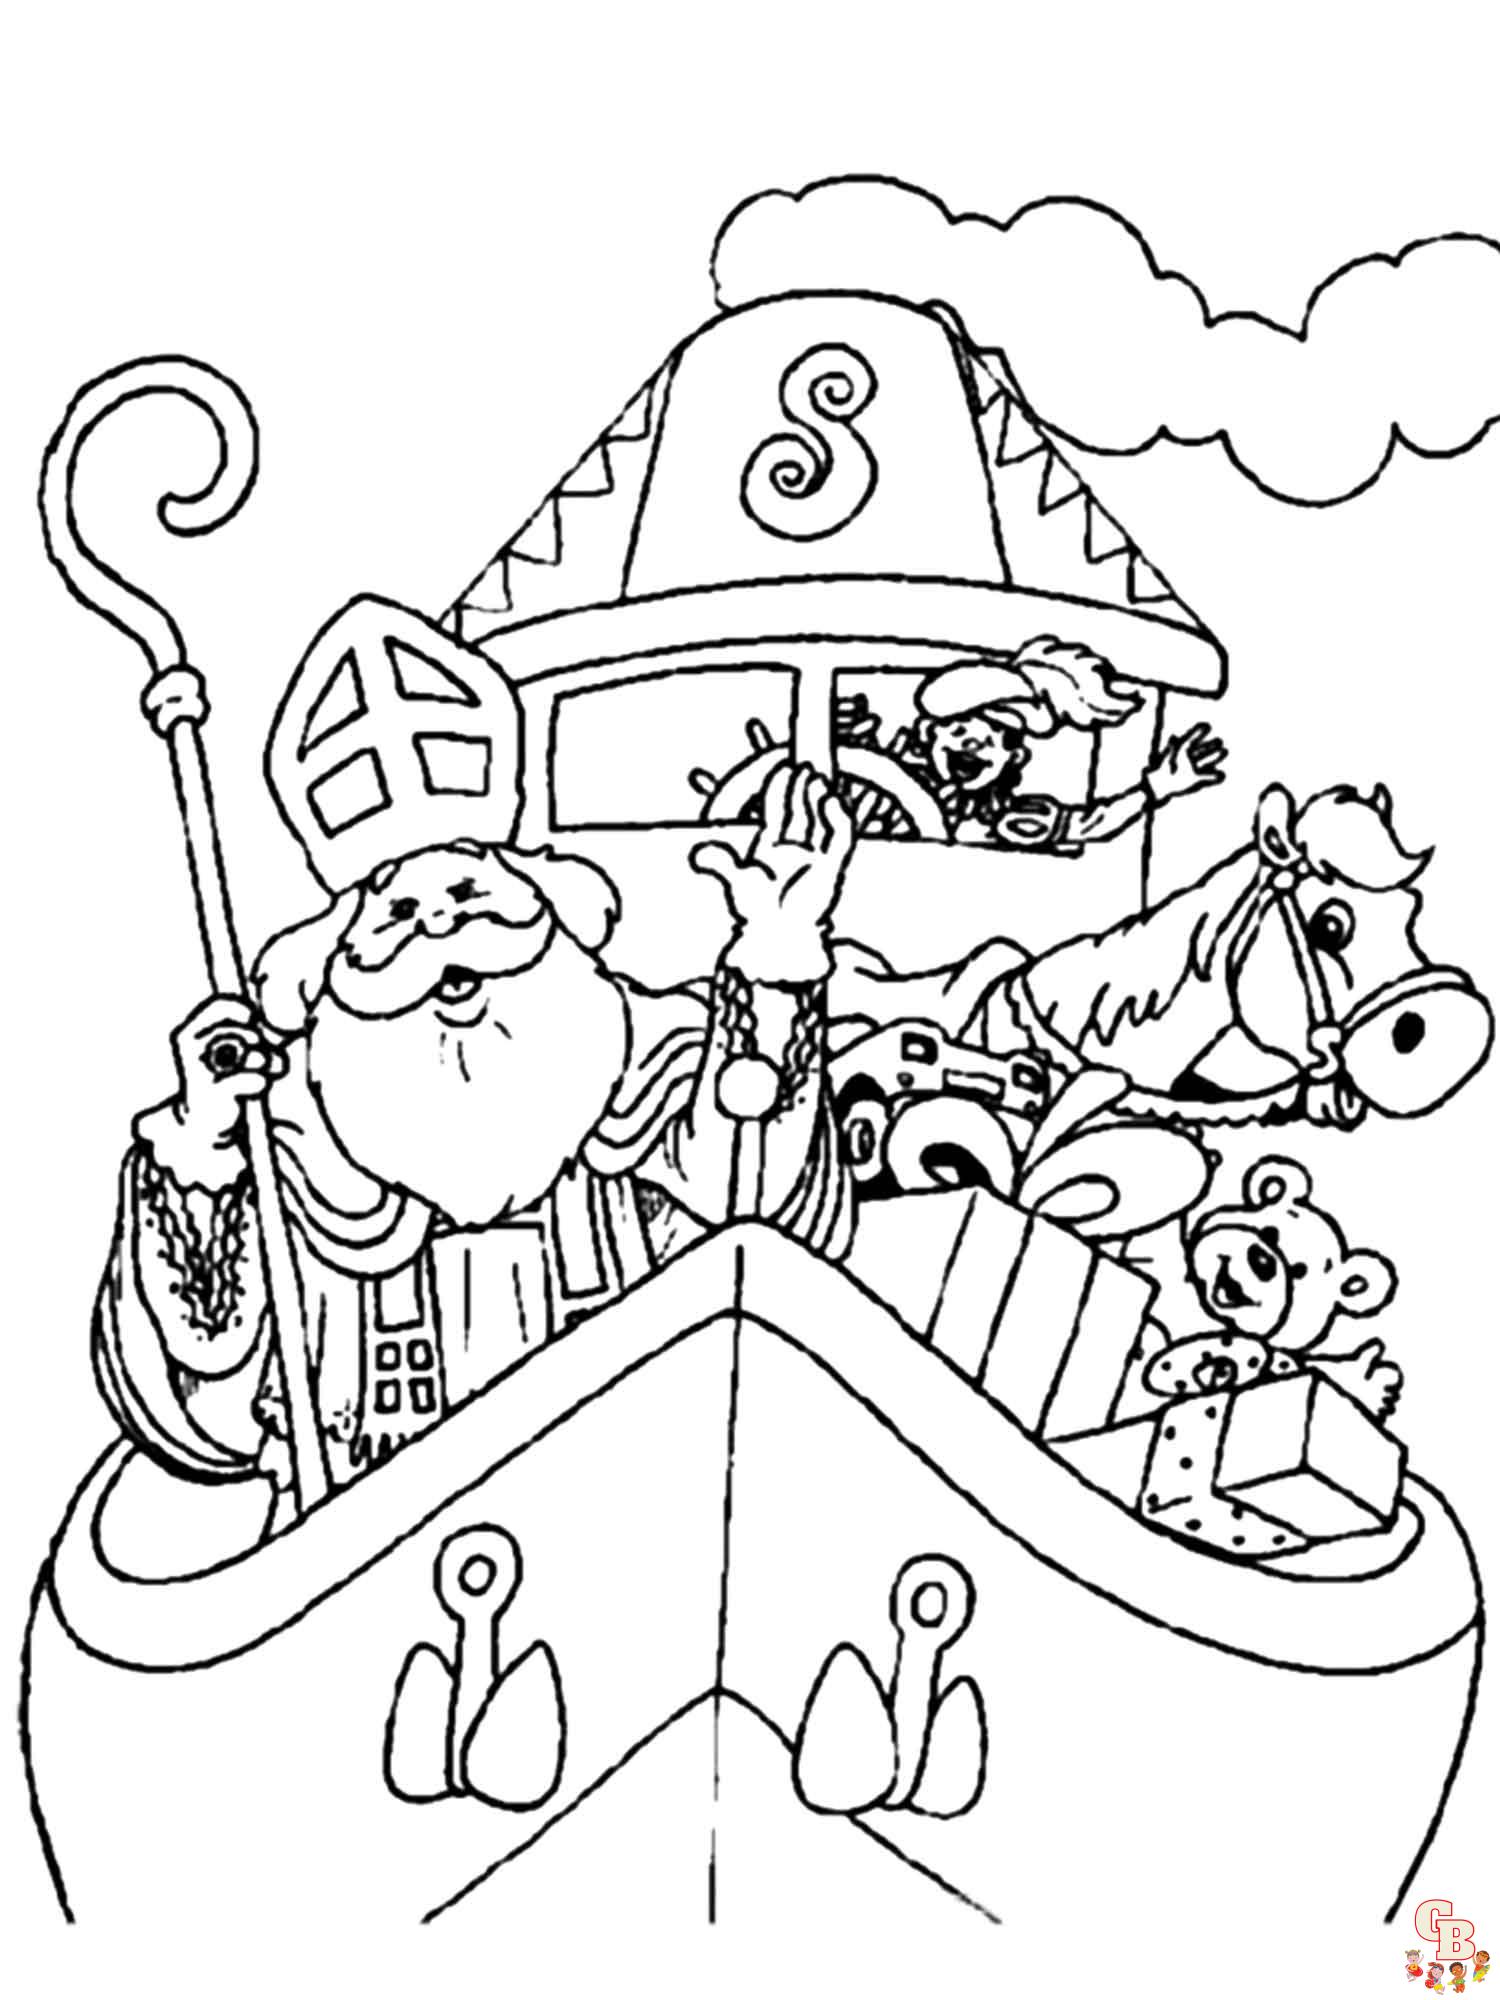 Sinterklaas Stoomboot Kleurplaat 12